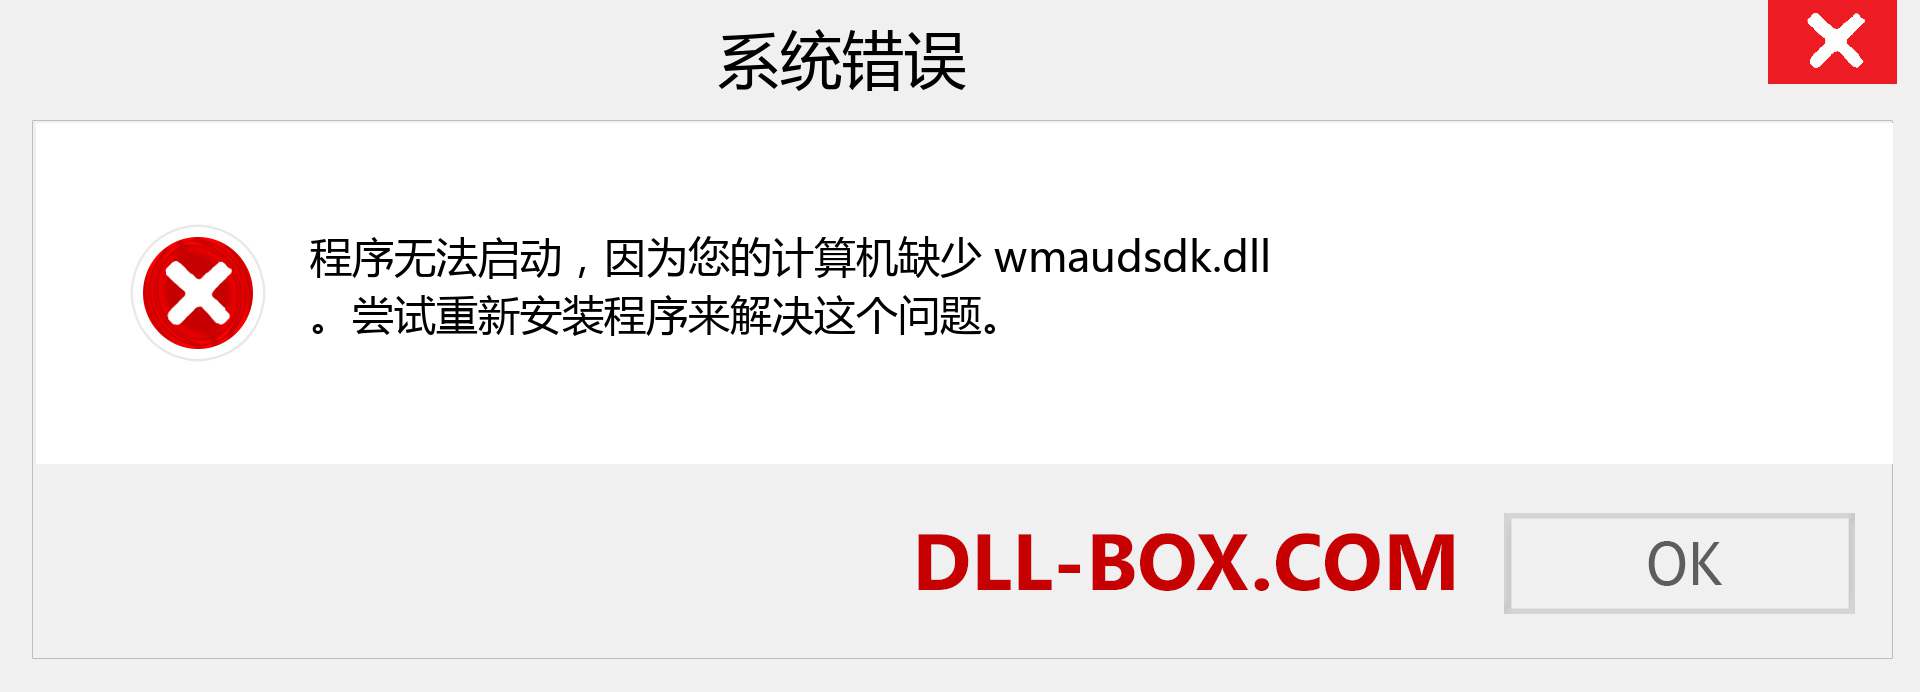 wmaudsdk.dll 文件丢失？。 适用于 Windows 7、8、10 的下载 - 修复 Windows、照片、图像上的 wmaudsdk dll 丢失错误